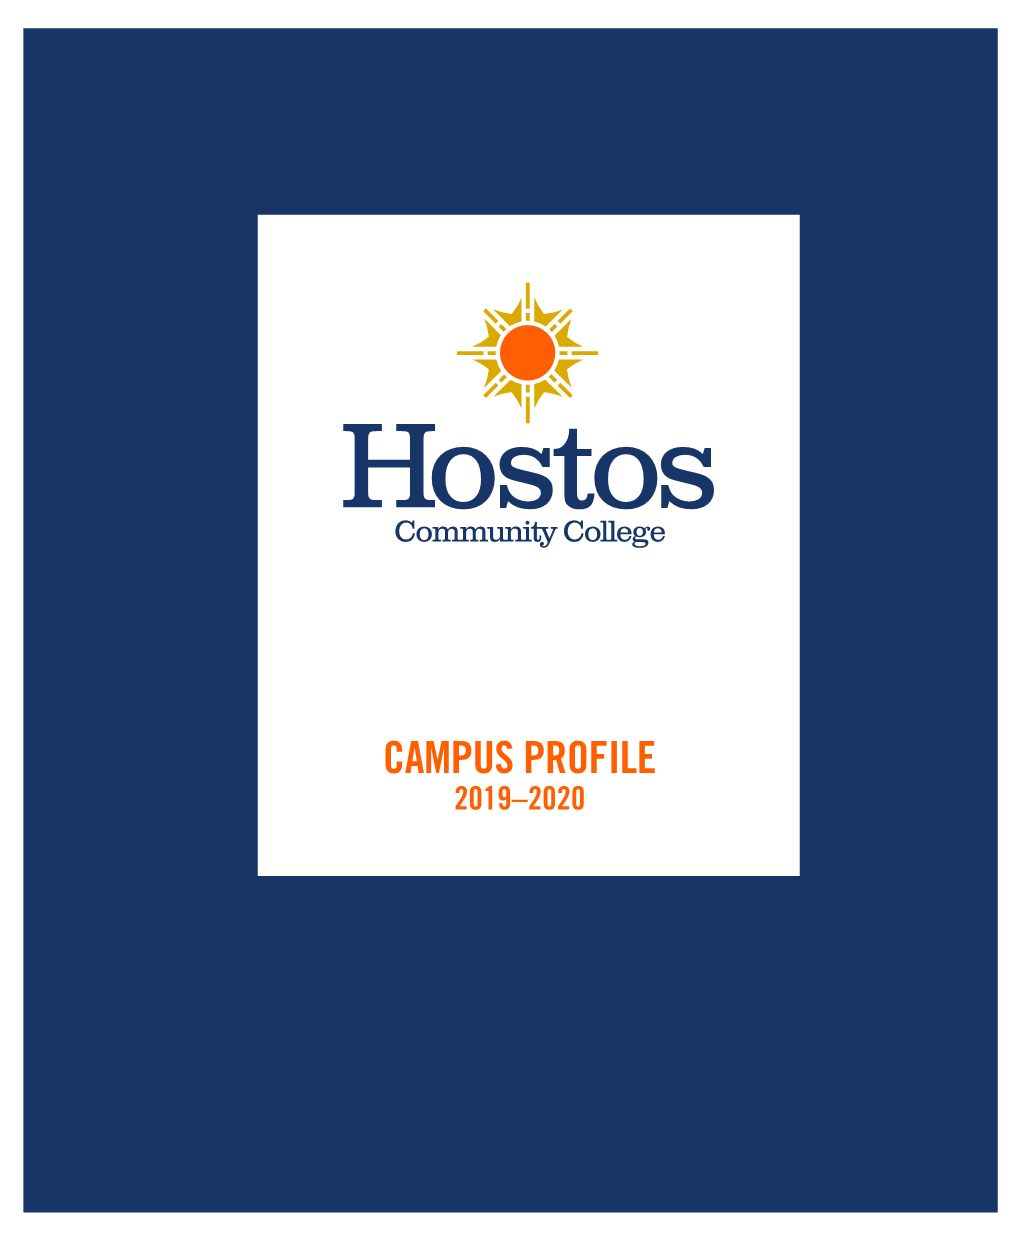 Campus Profile 2019-2020